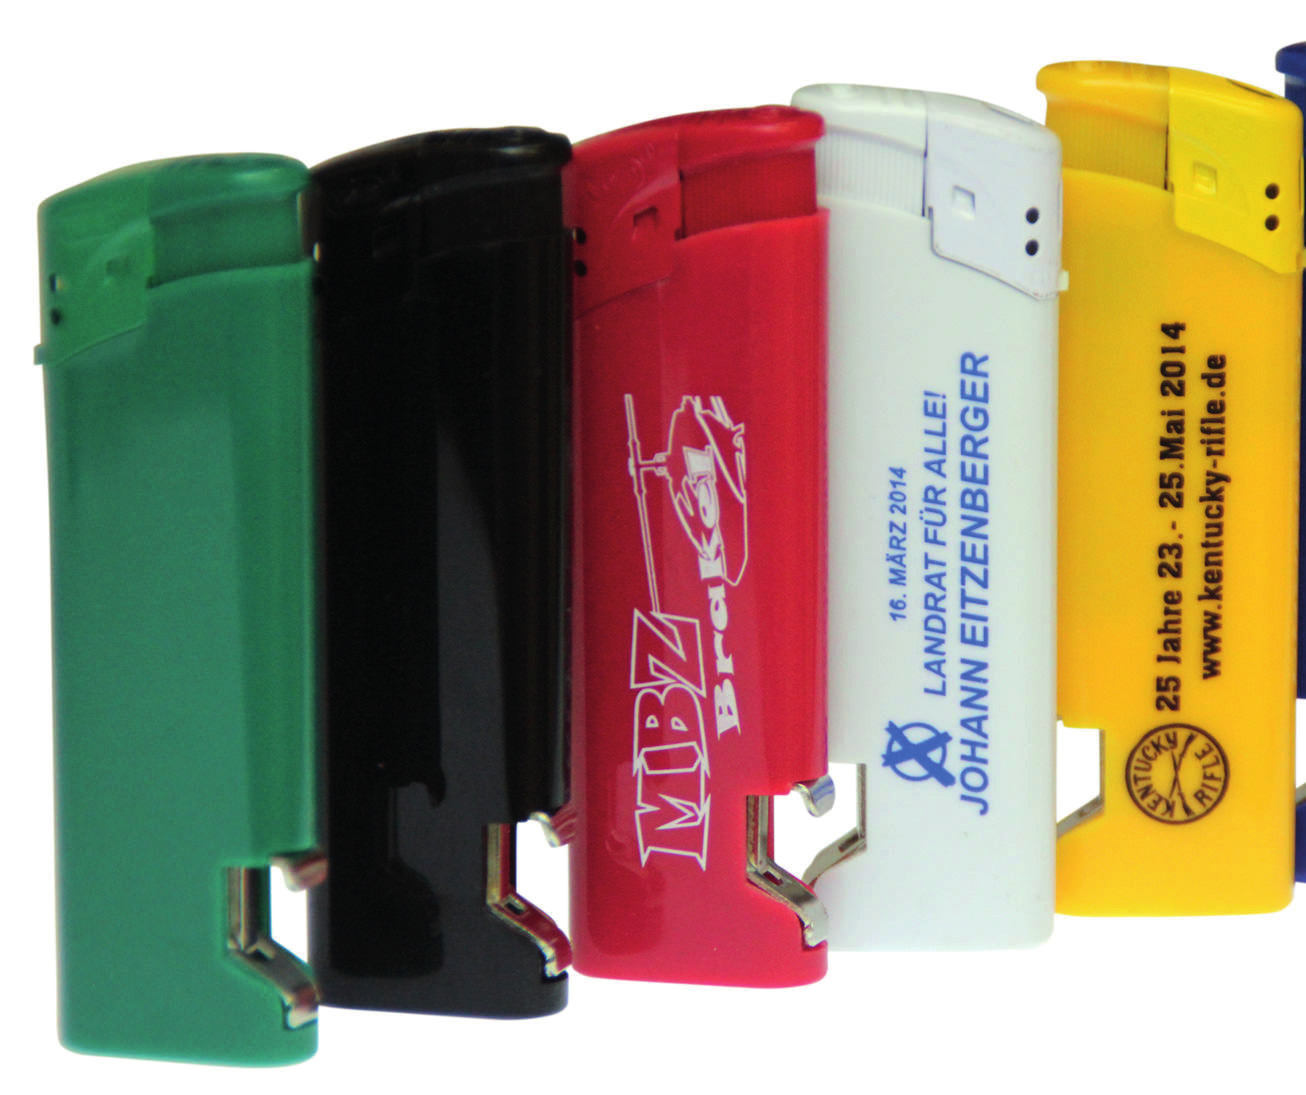 Tampondruck 1 farbig 100 Stück - 89 Euro zzgl. MwSt Elektronik-Feuerzeug mit Flaschenöffner Elektronik-Feuerzeug mit 1-farbigem Werbedruck nach Ihrem Motiv.